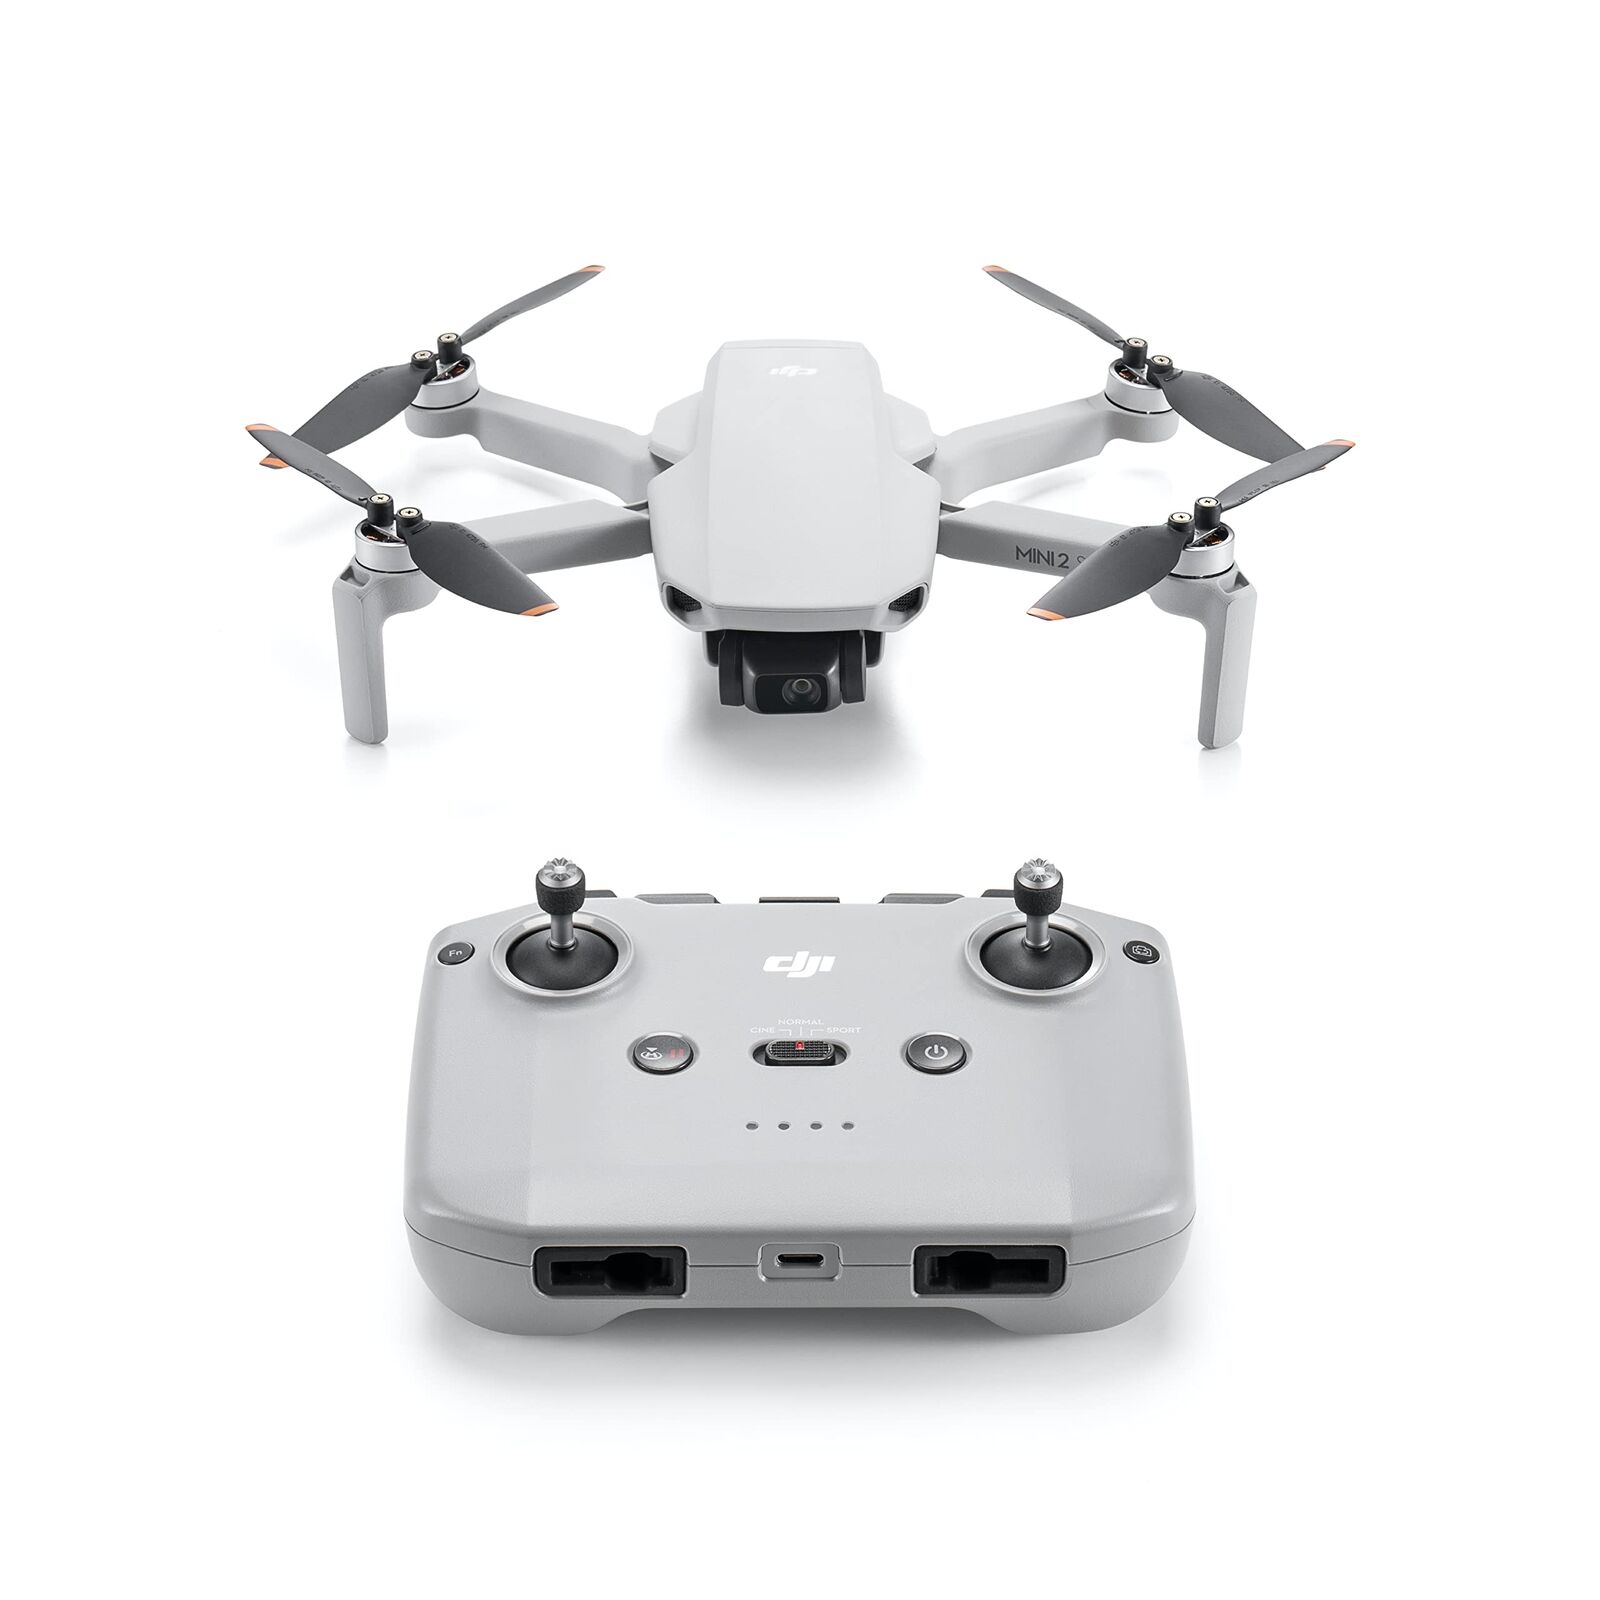 DJI Drone Mini 2 SE Lightweight foldable mini camera drone that can shoot 2.7K v